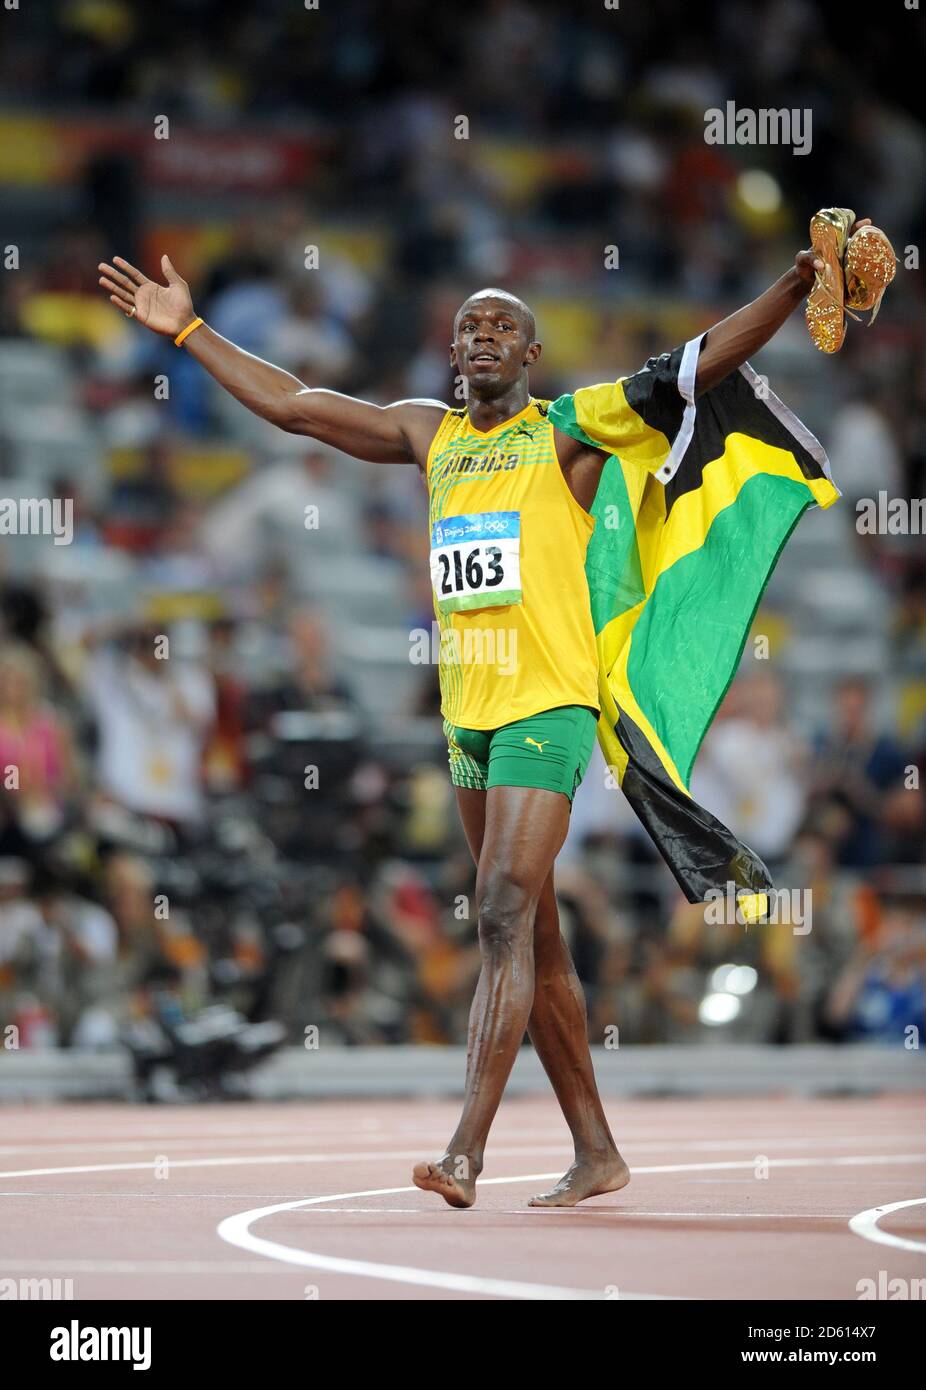 File Photo: Usain Bolt prova fuori per la squadra australiana di calcio  Central Coast Mariners. Giamaica Usain Bolt celebra la vittoria della  finale di 100m maschile in un nuovo record mondiale di